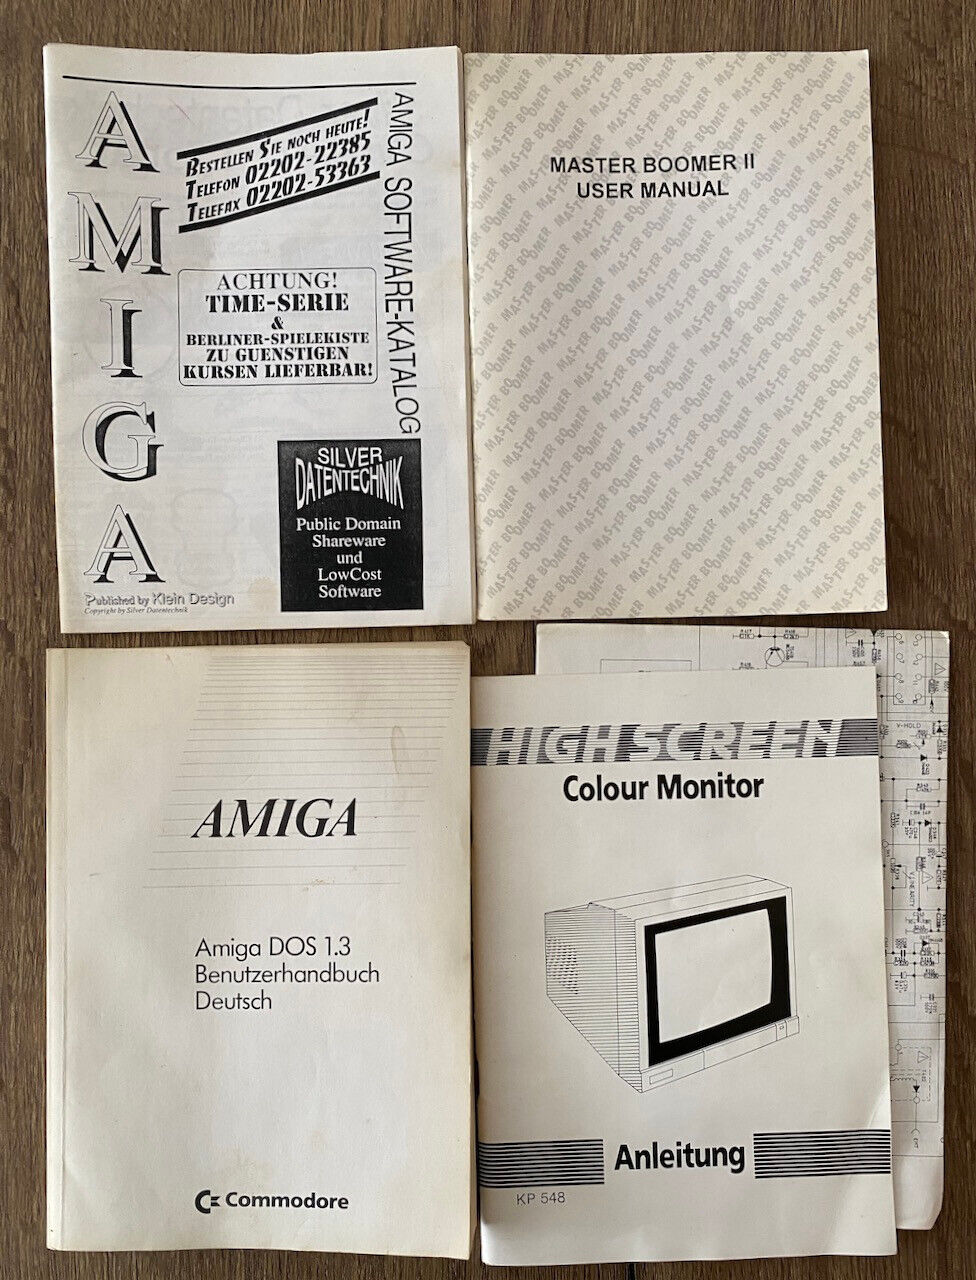 Amiga/Convolut Books And 12 Original Floppy Discs